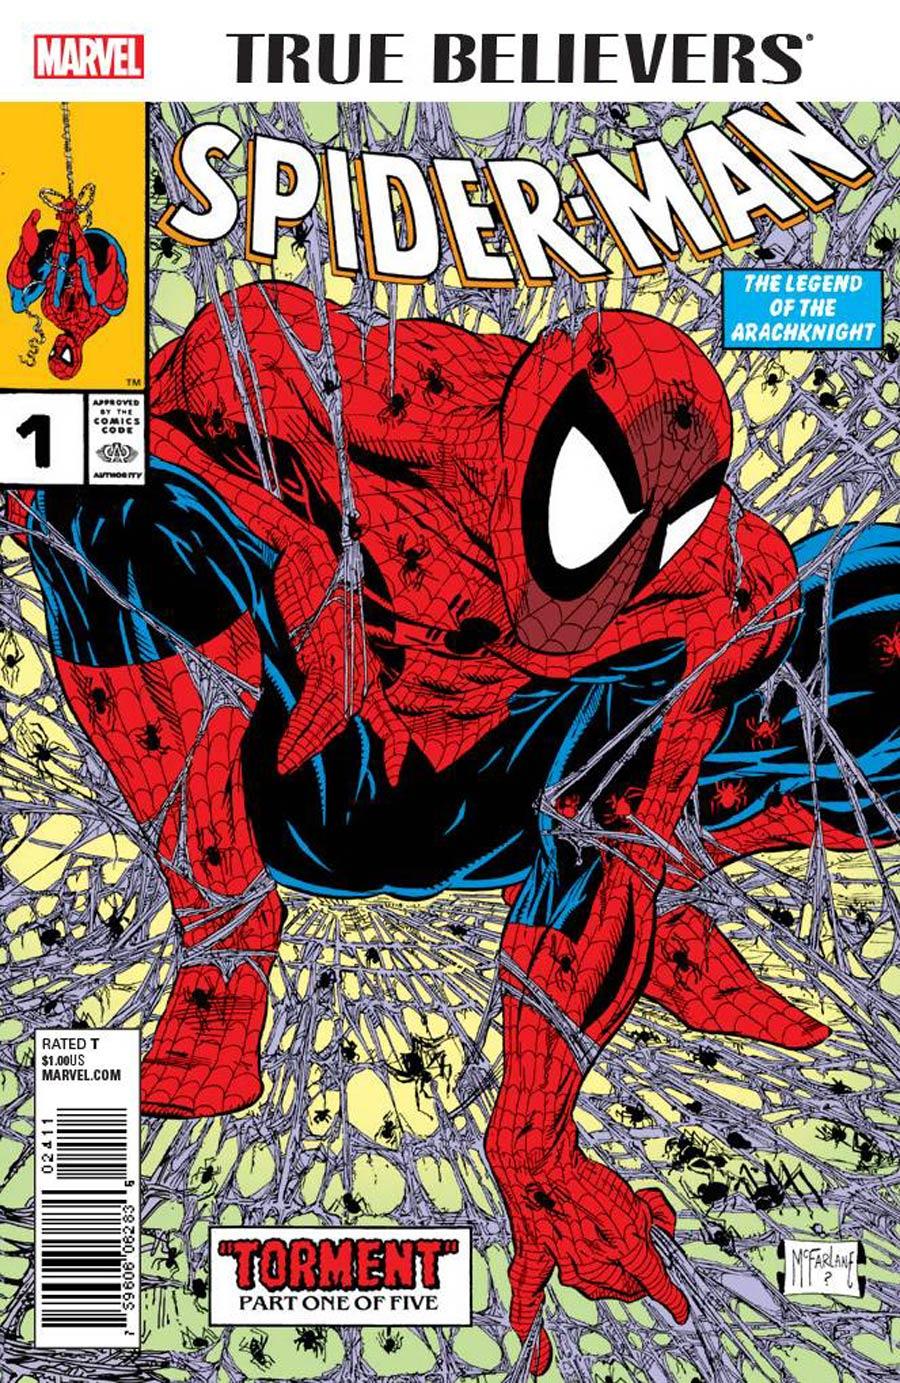 True Believers Spider-Man Vol. 1 #1